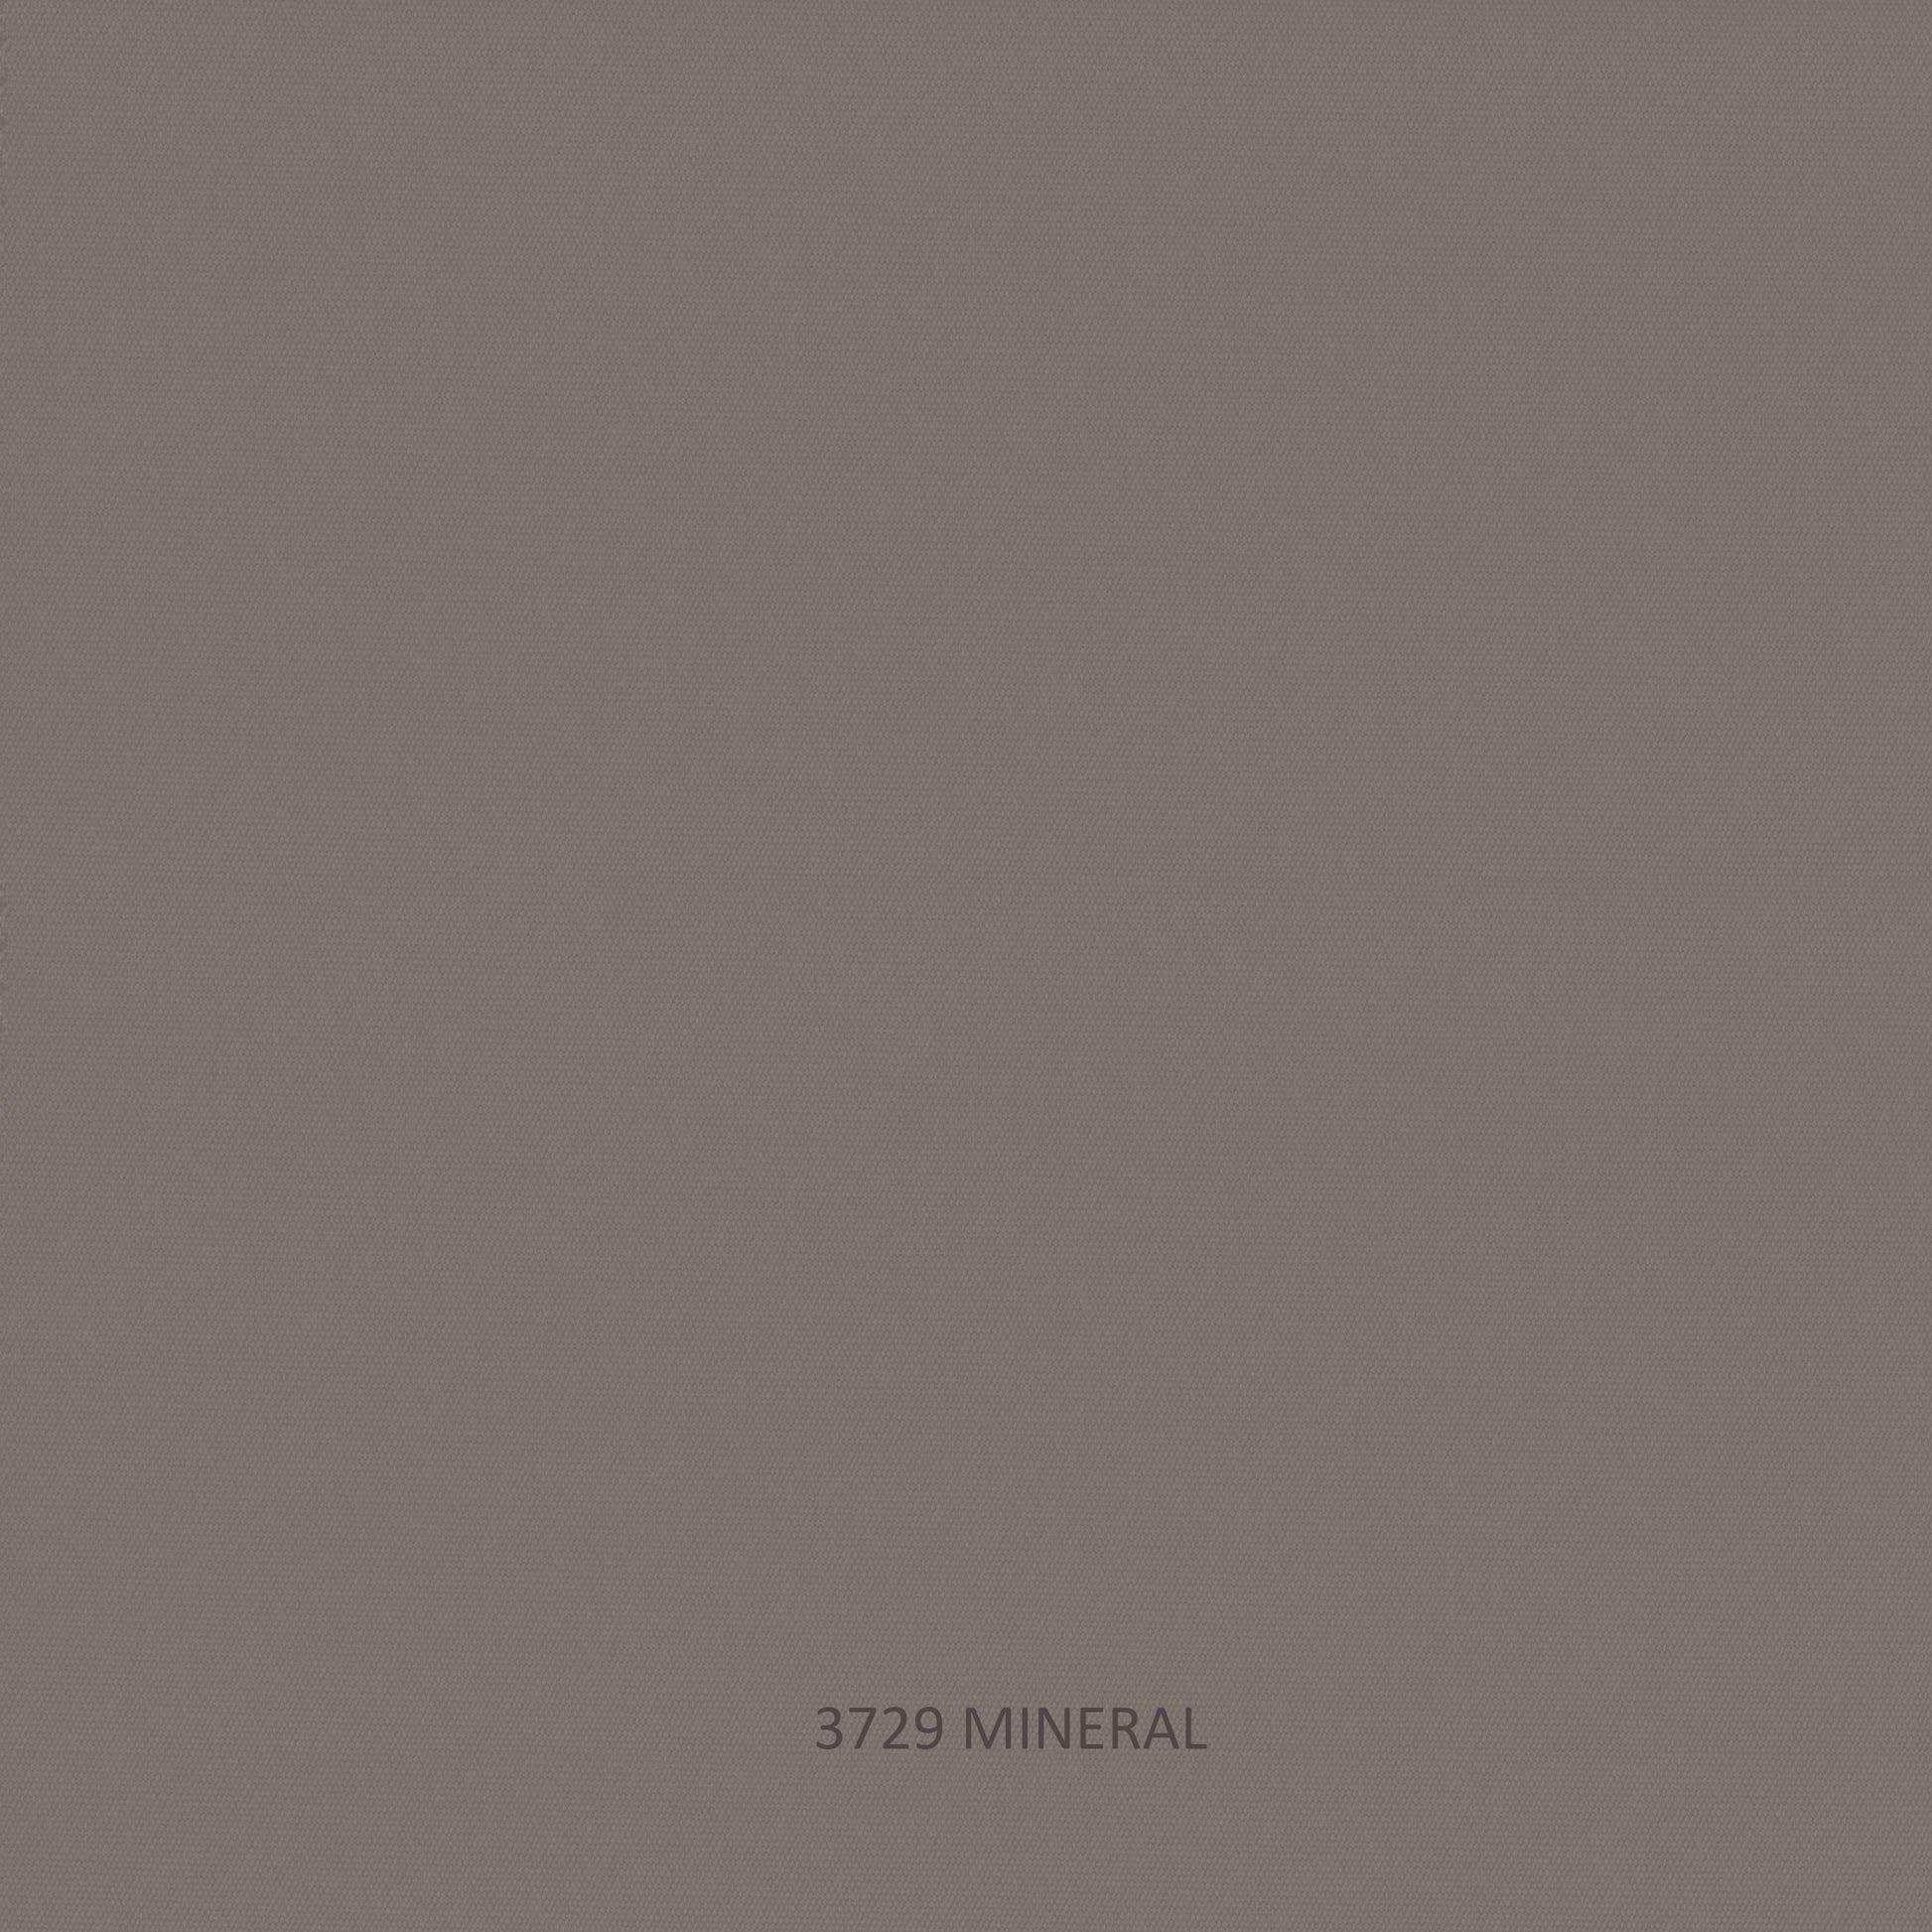 Horizon Sofa - PadioLiving - Horizon Sofa - Outdoor Sofa - Dark Grey 35mm Strap / Metal-Mineral (£2327) - PadioLiving